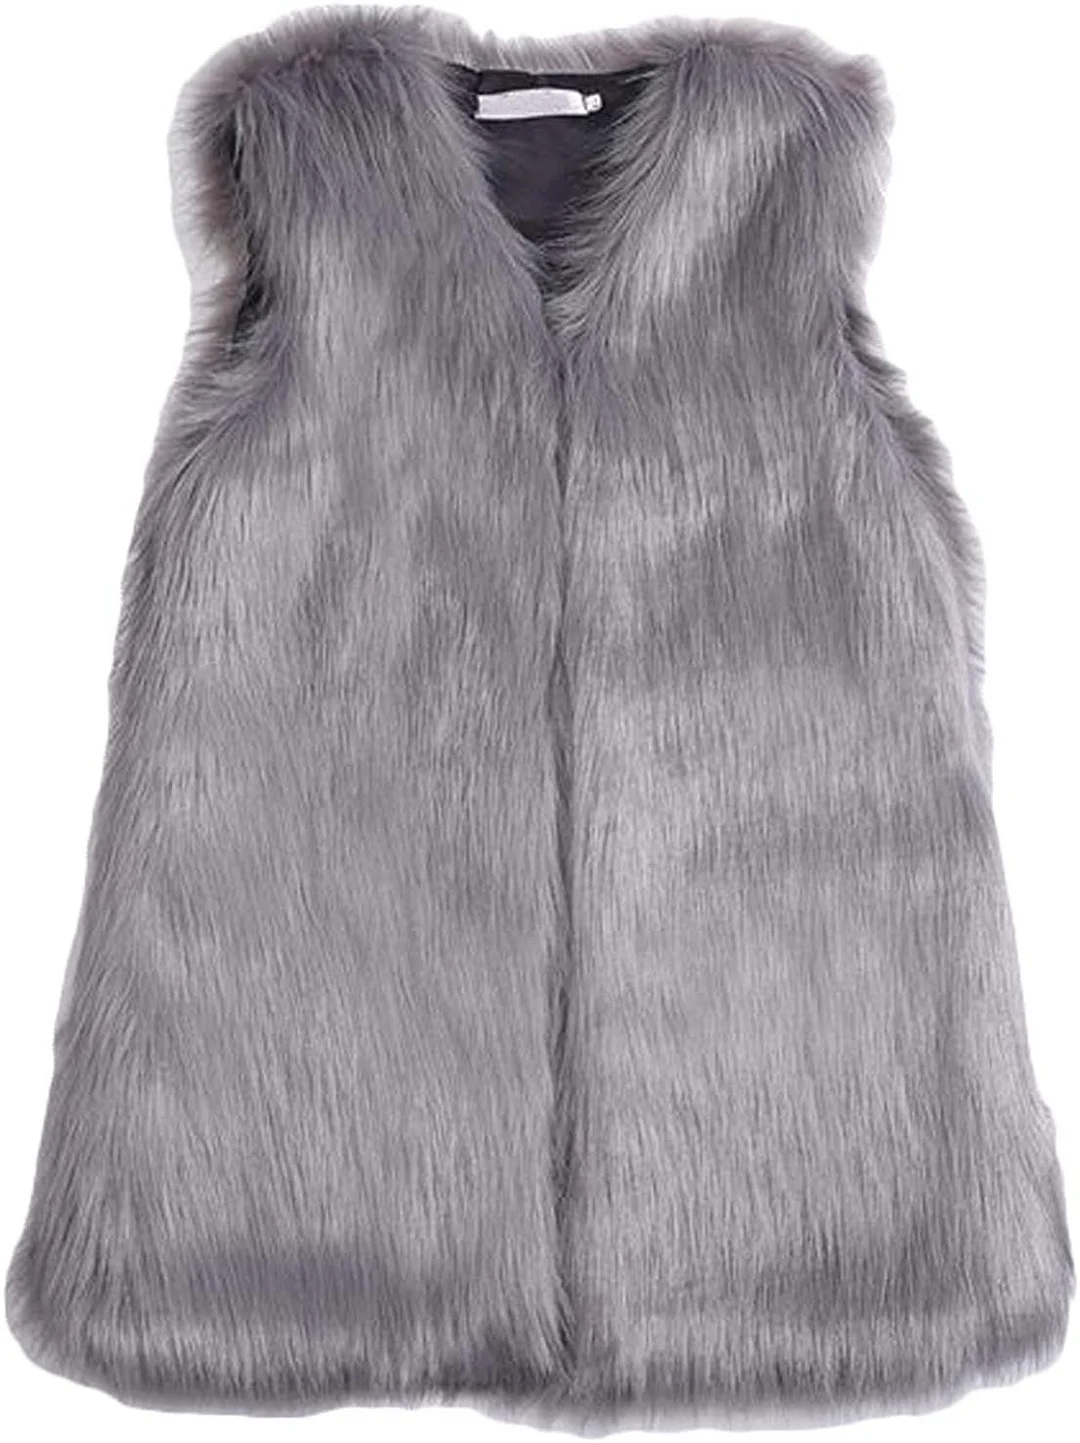 Women's Faux Fur Vest Coat Sleeveless Jacket